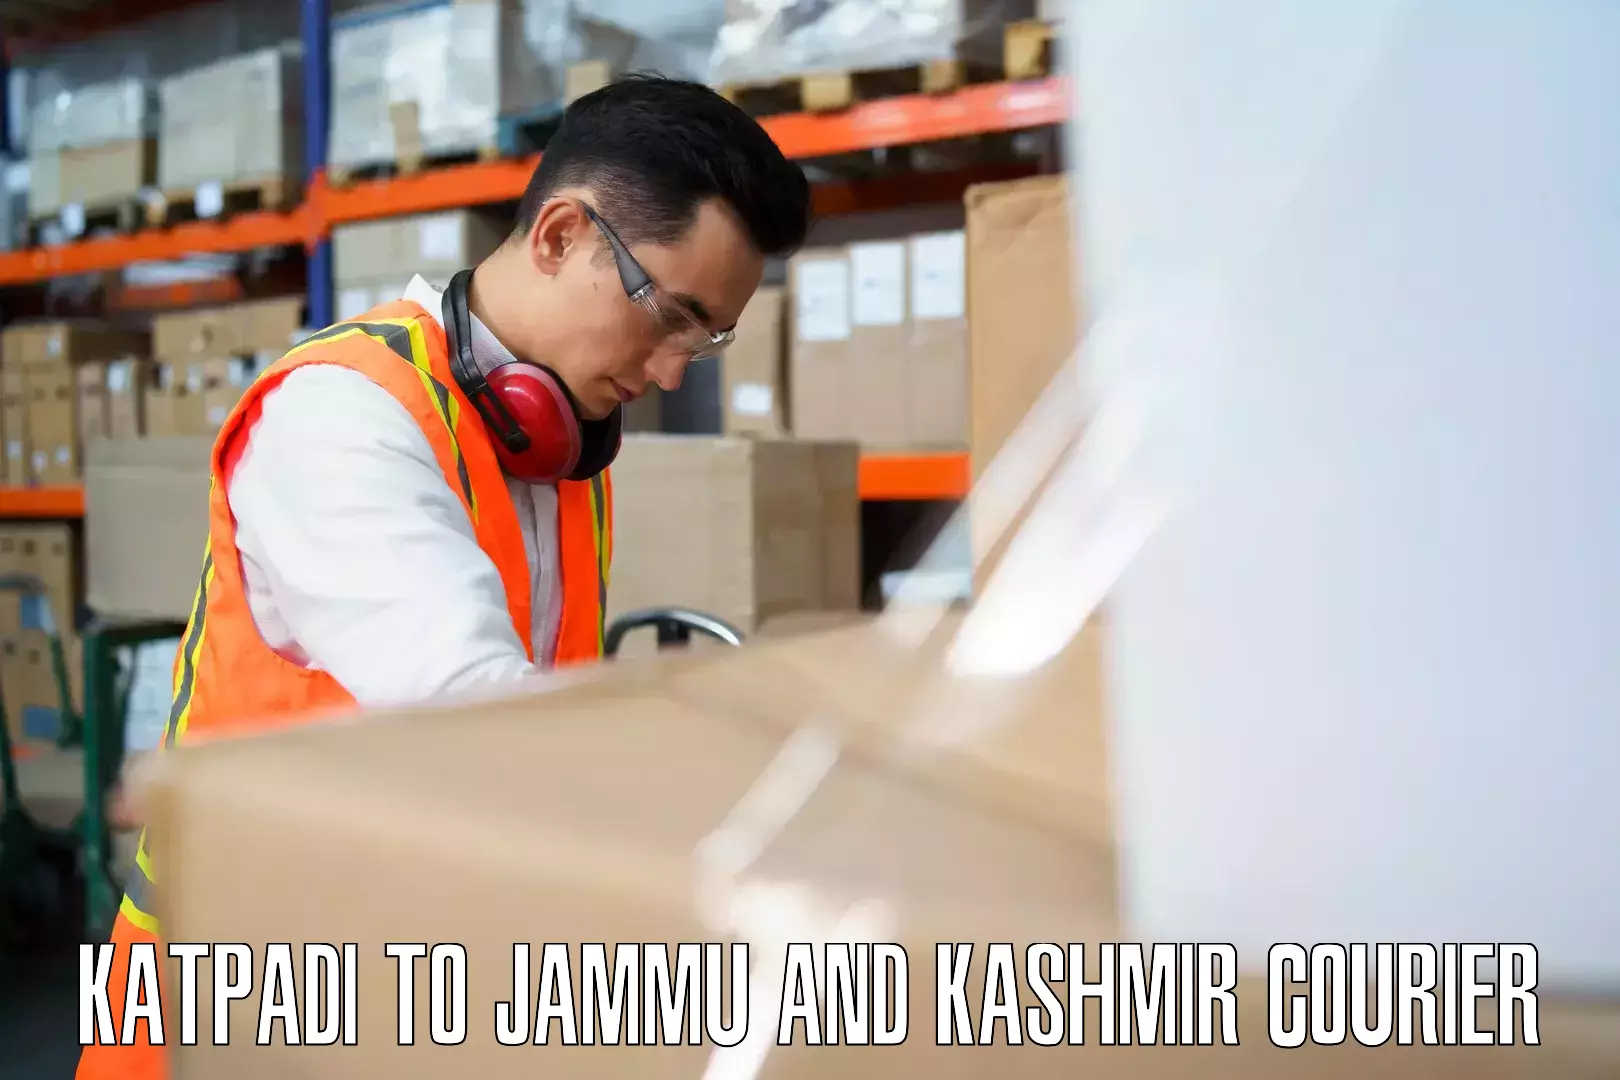 Door-to-door baggage service Katpadi to University of Jammu